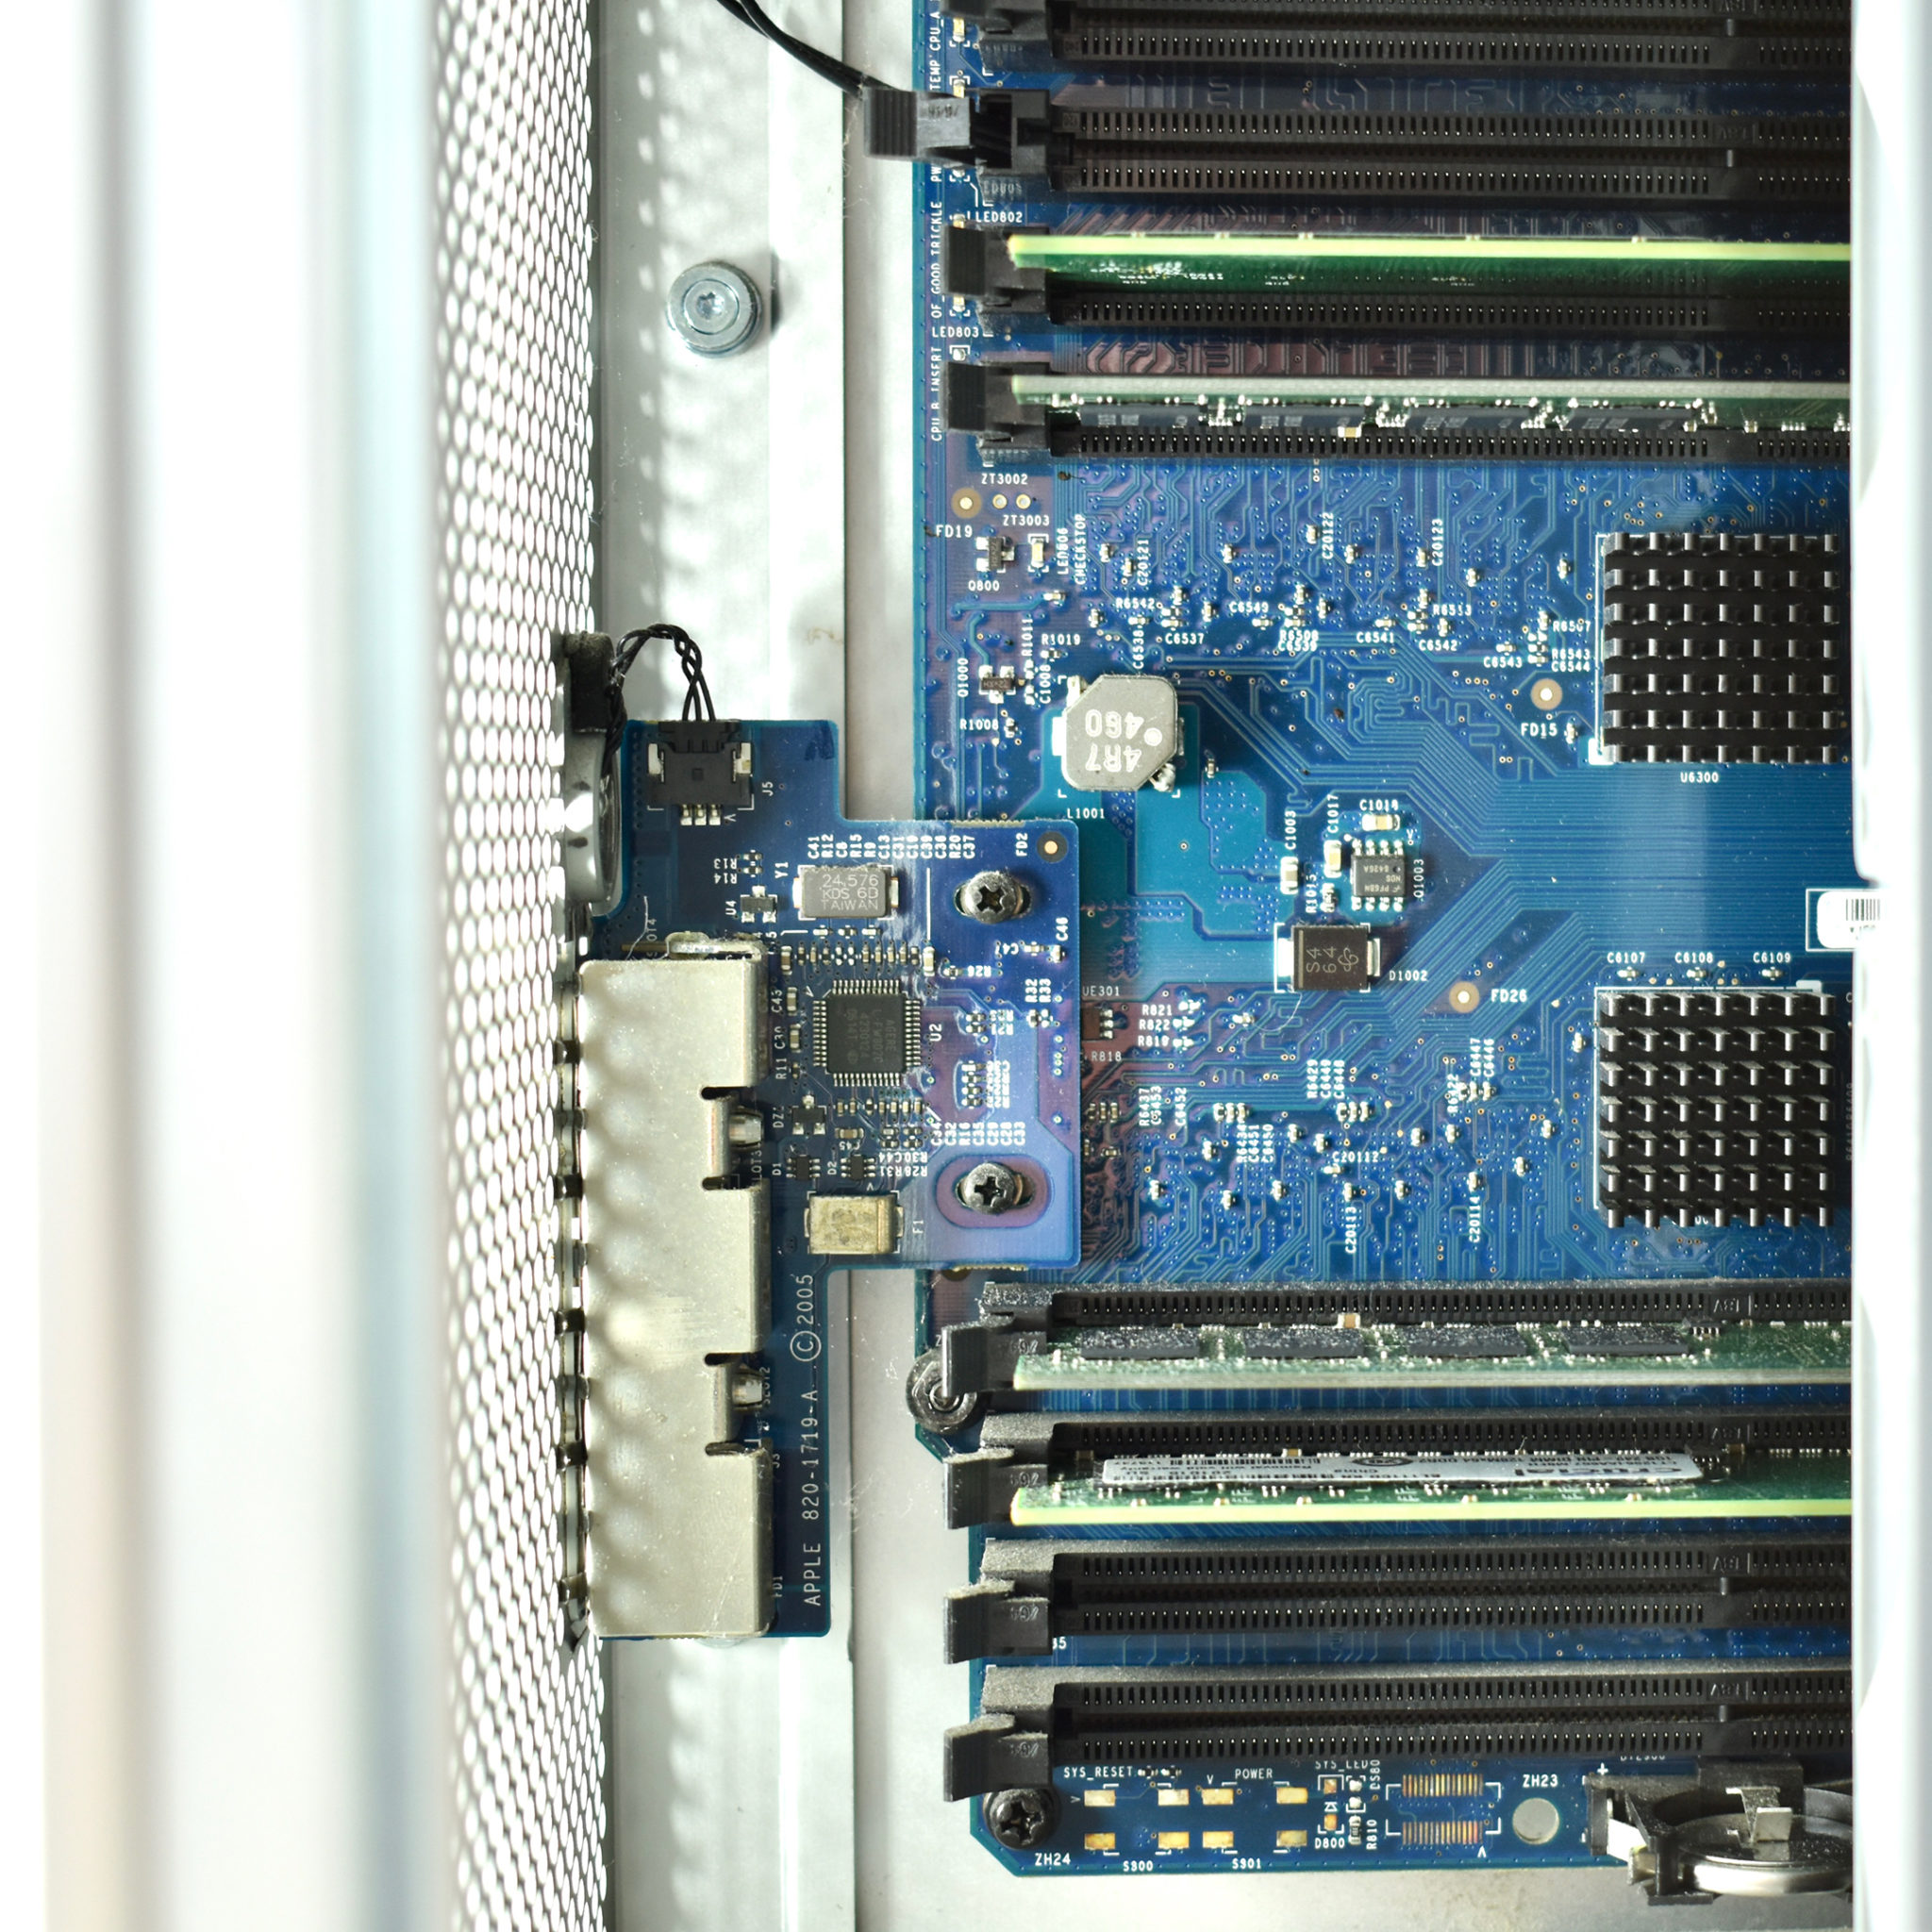 dual cpu server in a power mac g5 case